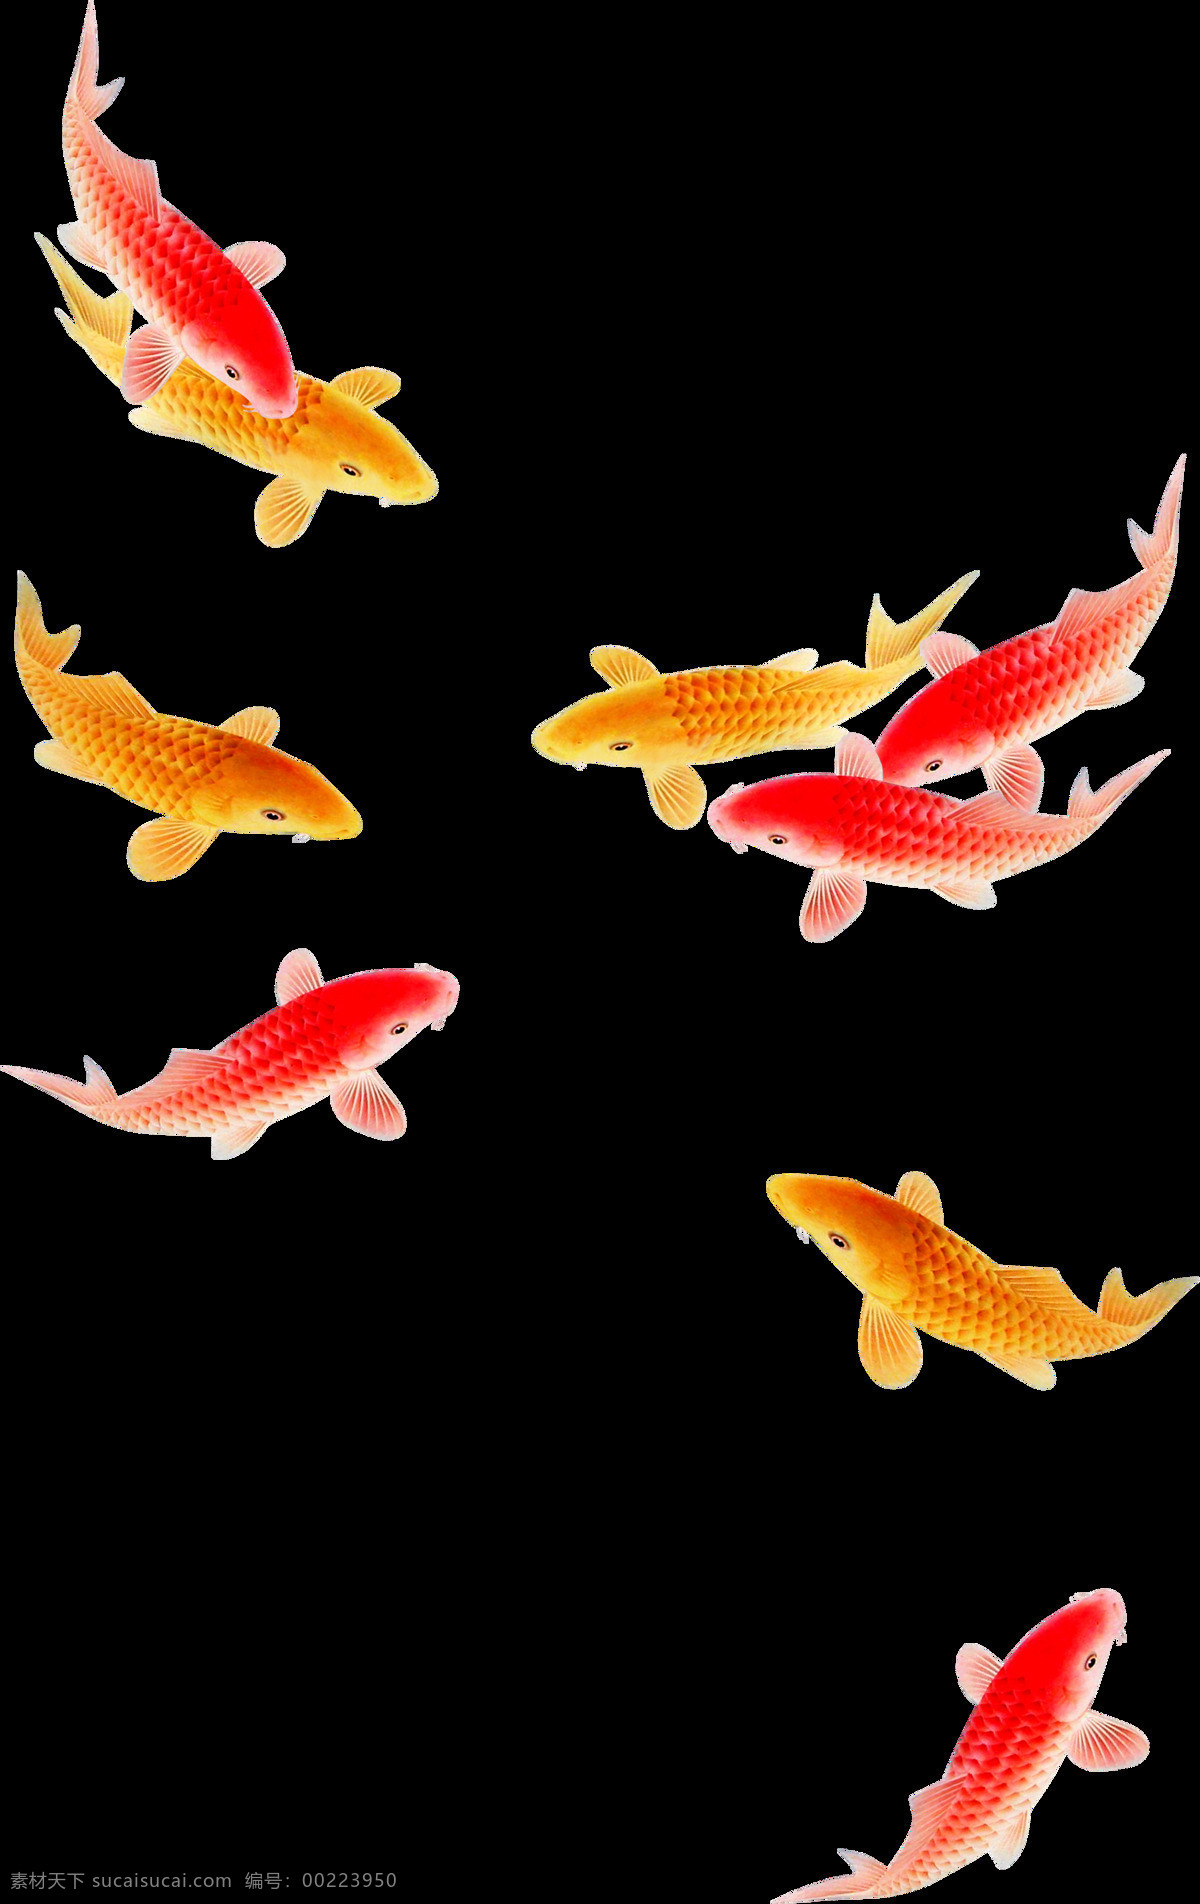 红黄鲤鱼 鱼 鲤鱼 分散 群鱼 一群 透明底 鲜艳 生物世界 鱼类